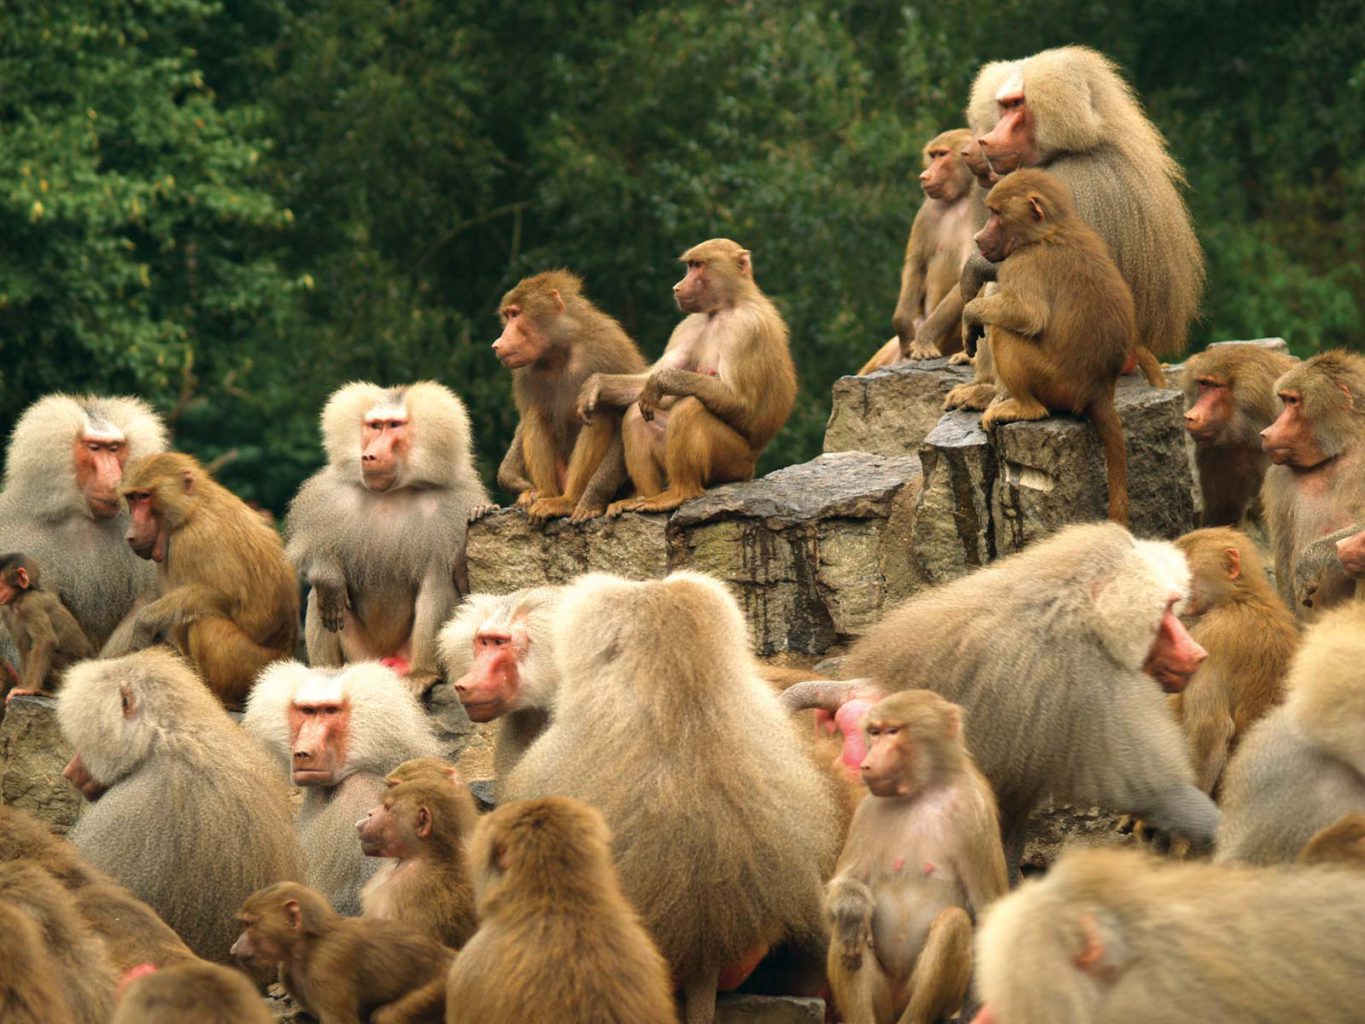 Monkeys In a Group